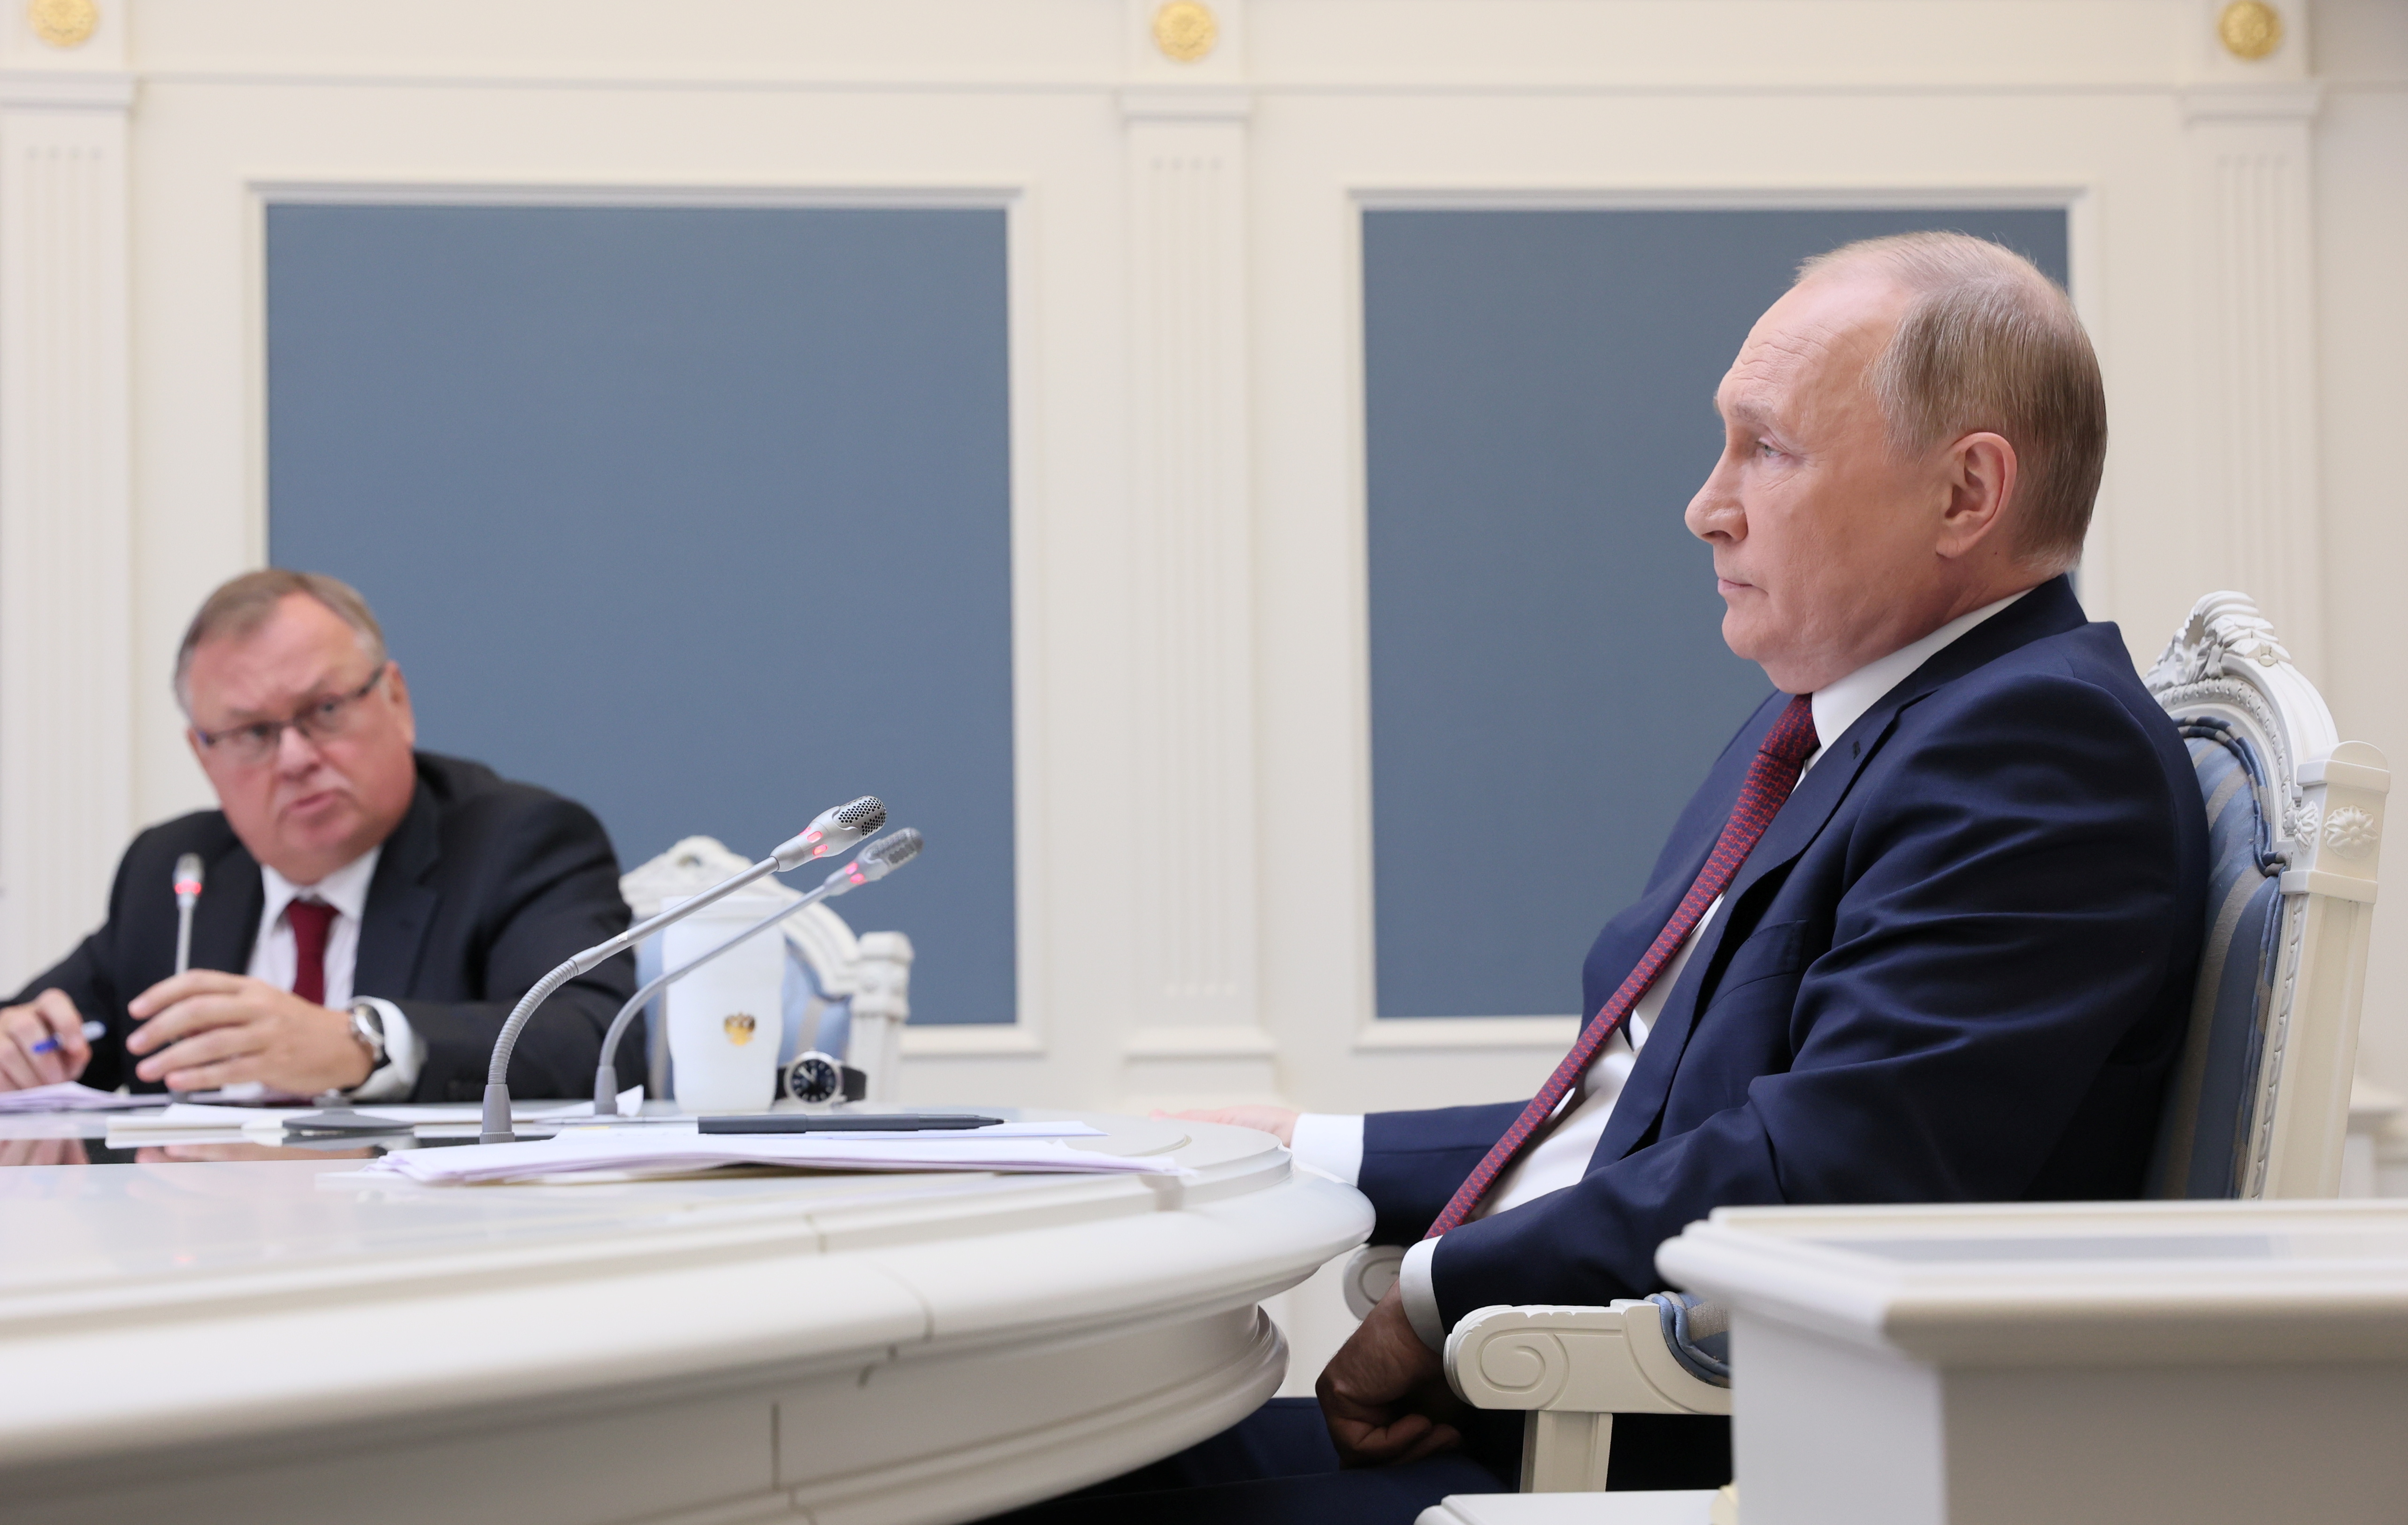 Președintele rus Vladimir Putin și CEO-ul băncii VTB Andrey Kostin participă la o sesiune a Forumului de investiții de capital VTB „Russia Calling!” printr-un apel video conferință la Moscova, Rusia, 30 noiembrie 2021. Sputnik/Mikhail Metzel/Pool via REUTERS